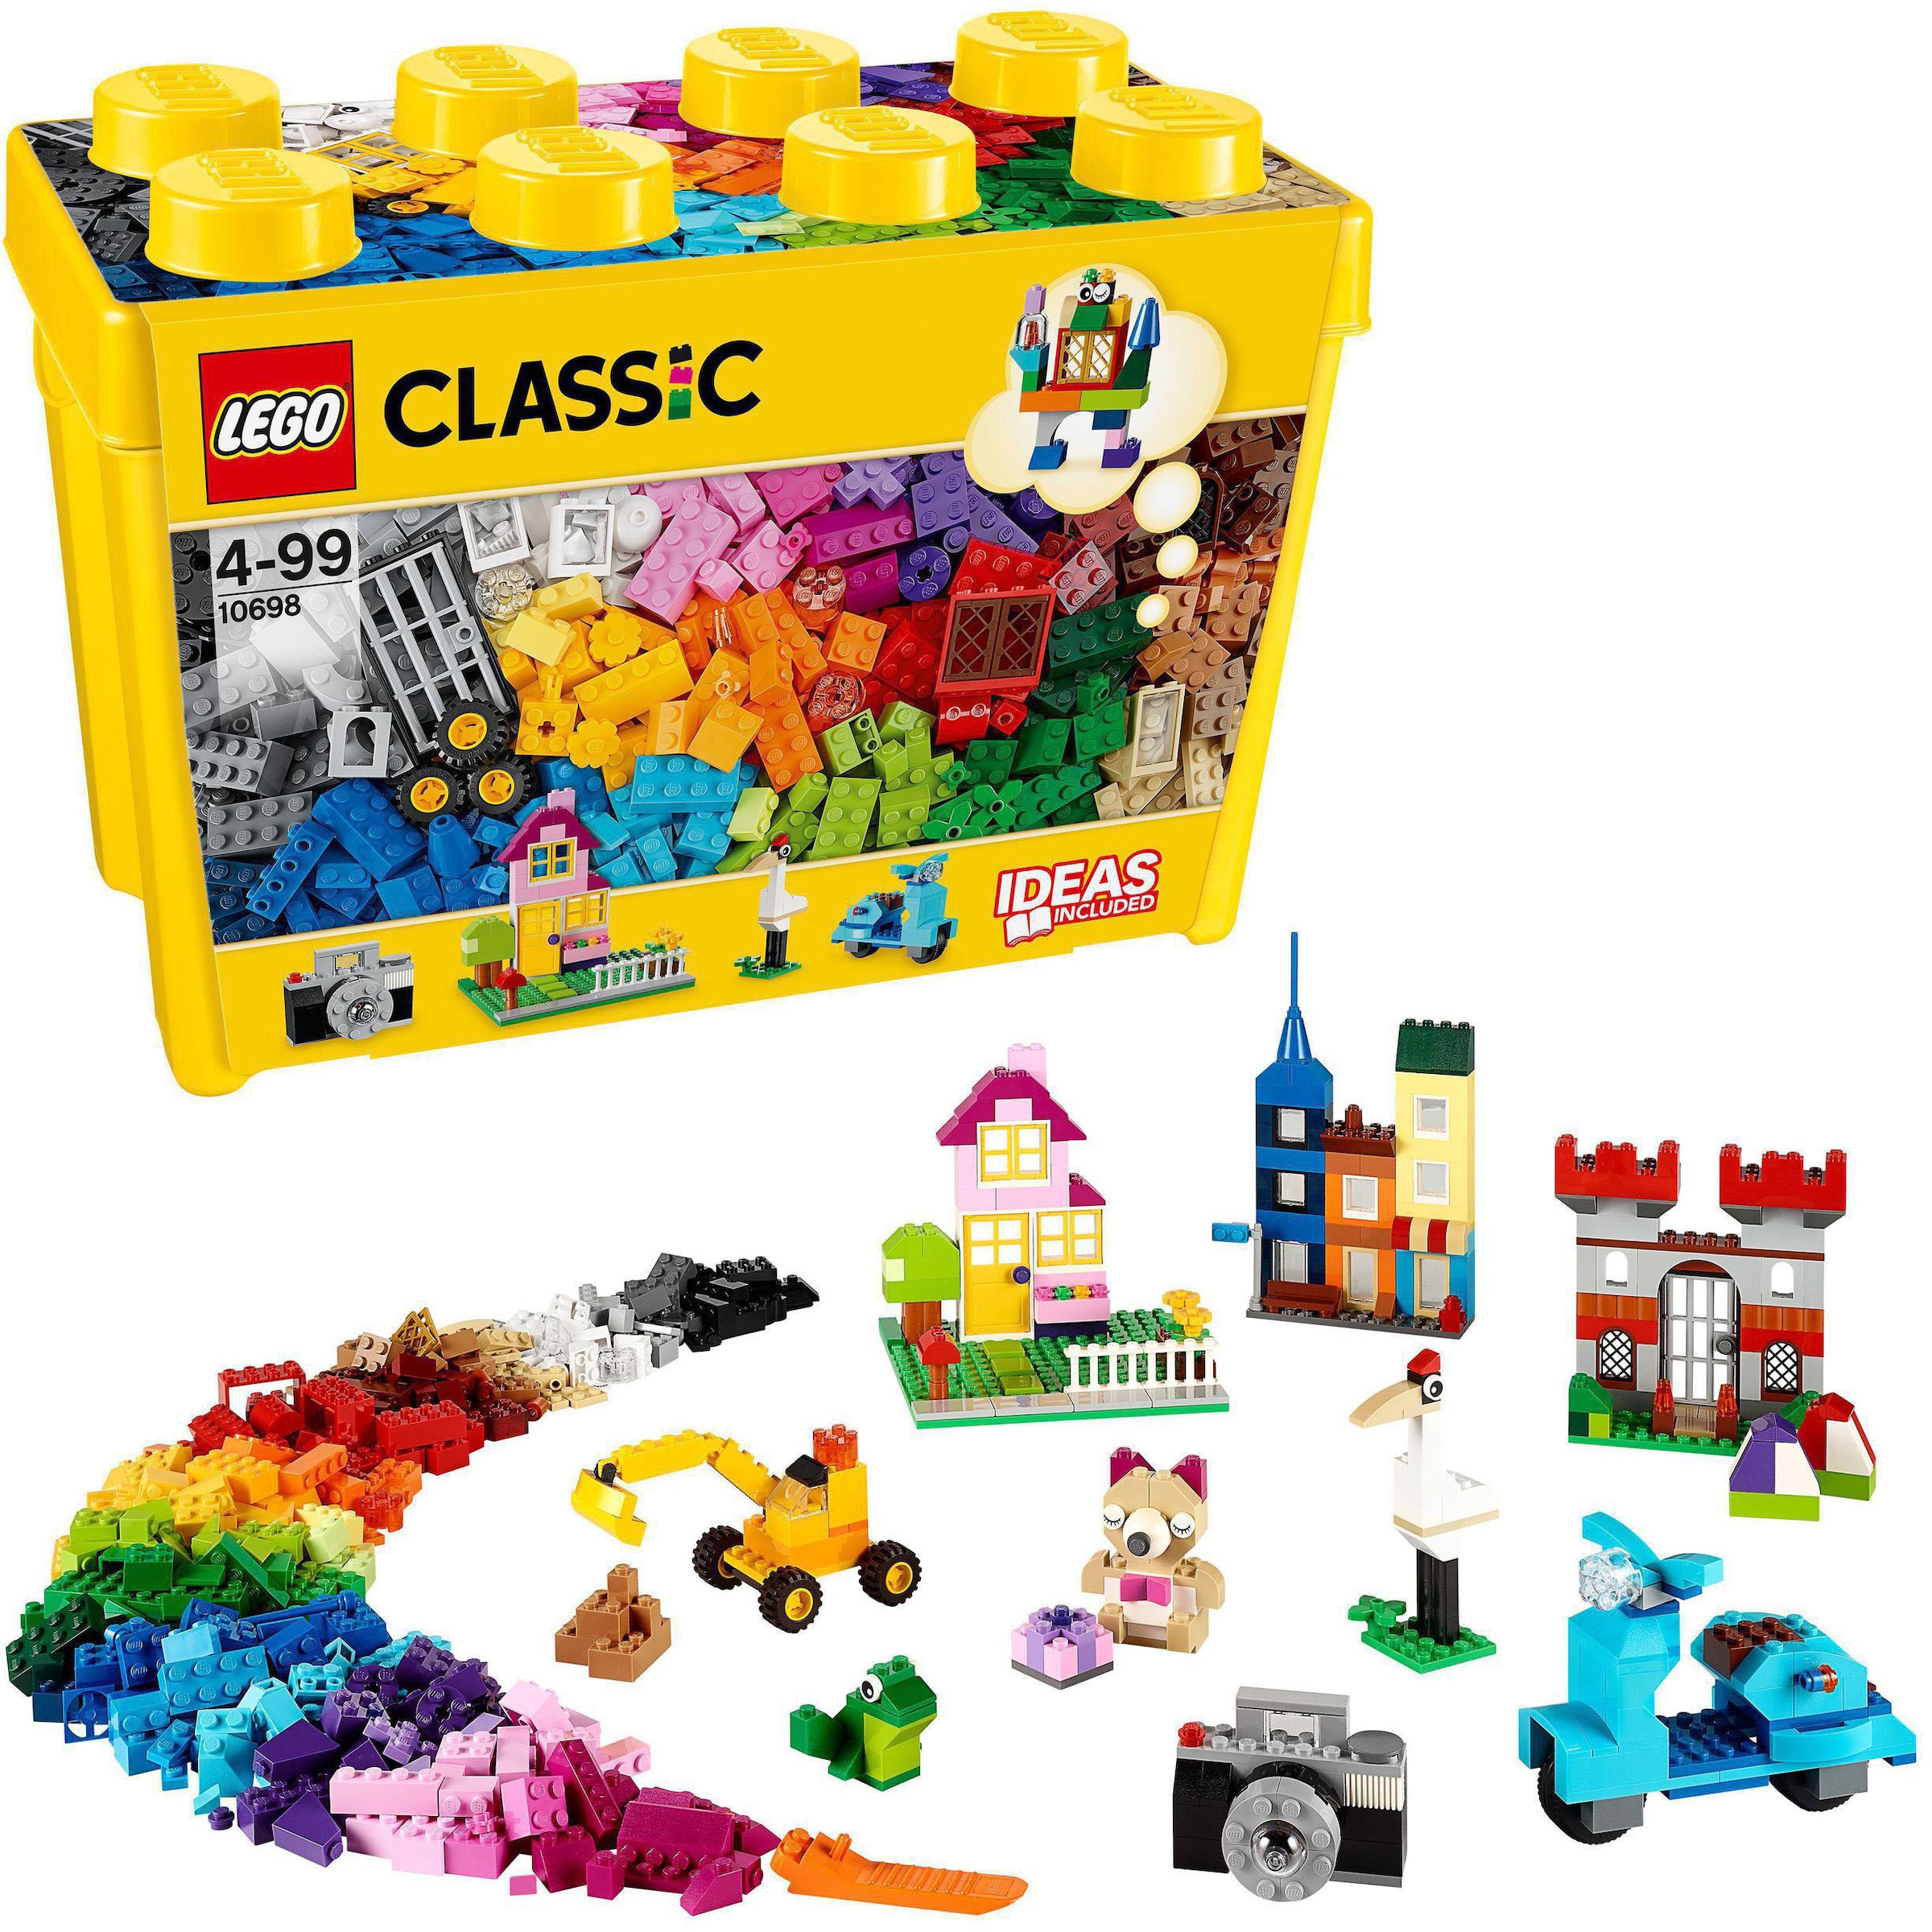 Konstruktionsspielsteine »Grosse Steine-Box (10698), LEGO® Classic«, (790 St.), Made...